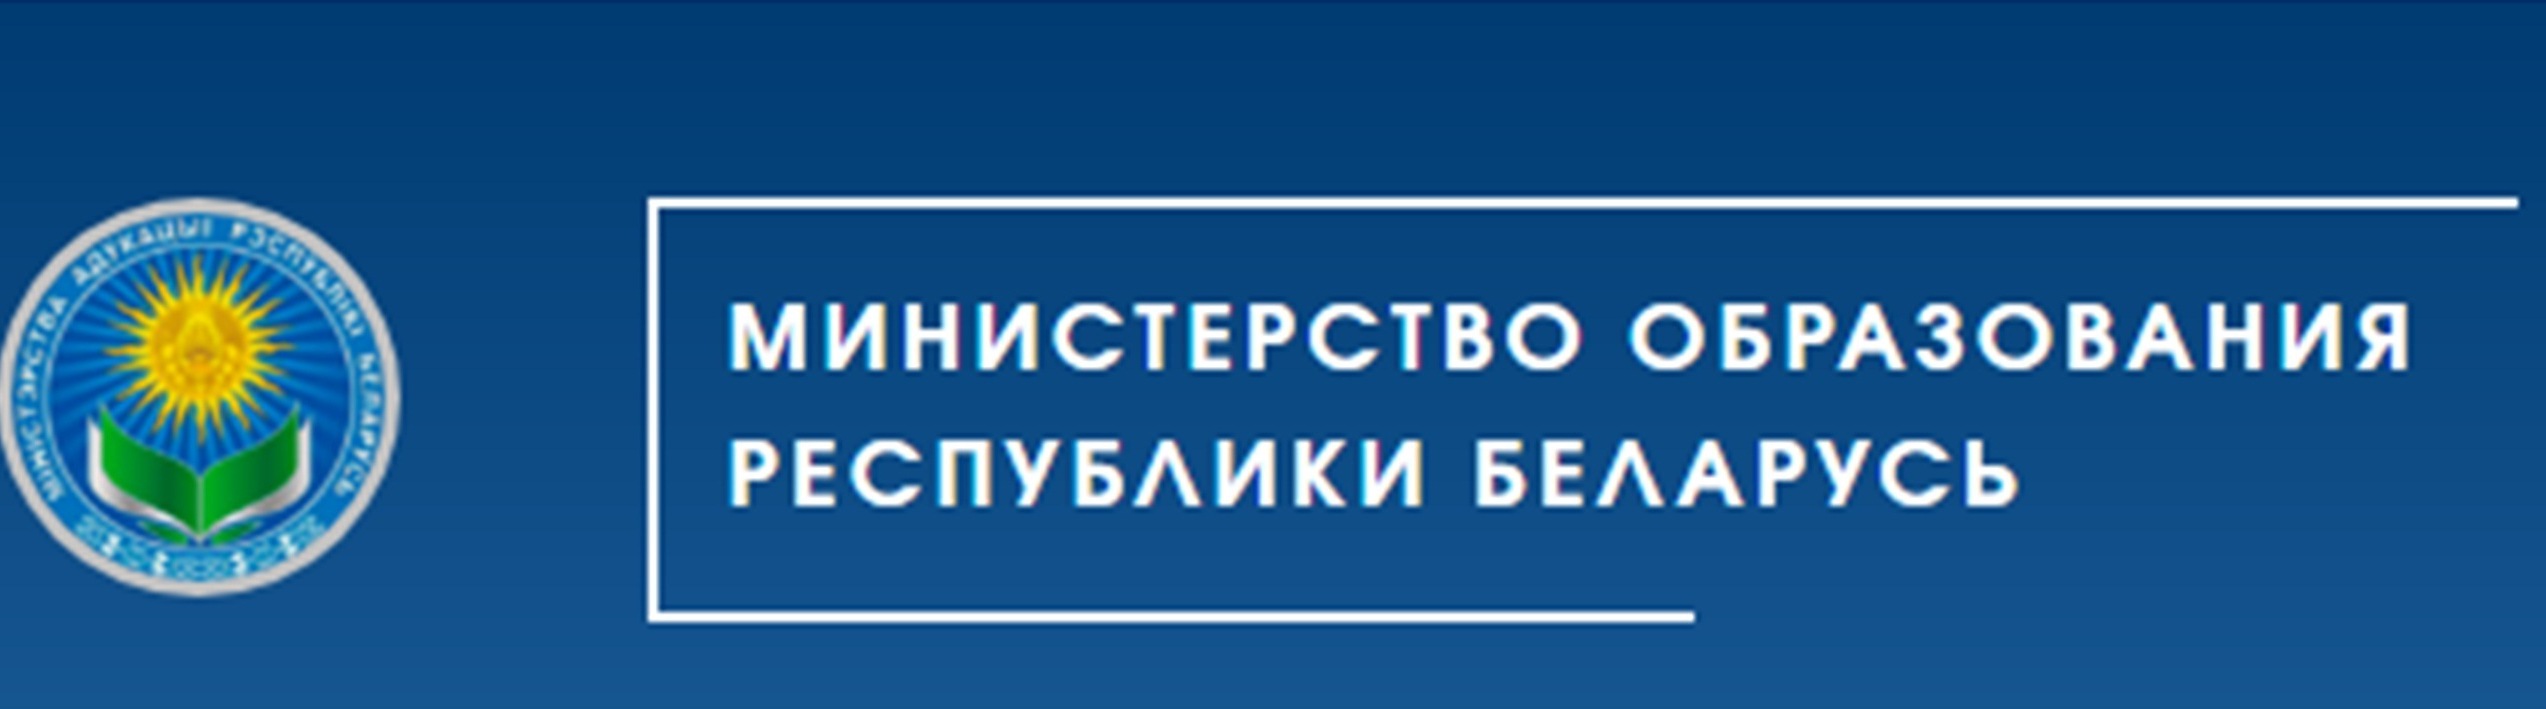 Сайт edu gov. Министерство образования РБ. Логотип Министерства образования РБ. Баннер Министерства образования. Герб Министерства образования Беларуси.